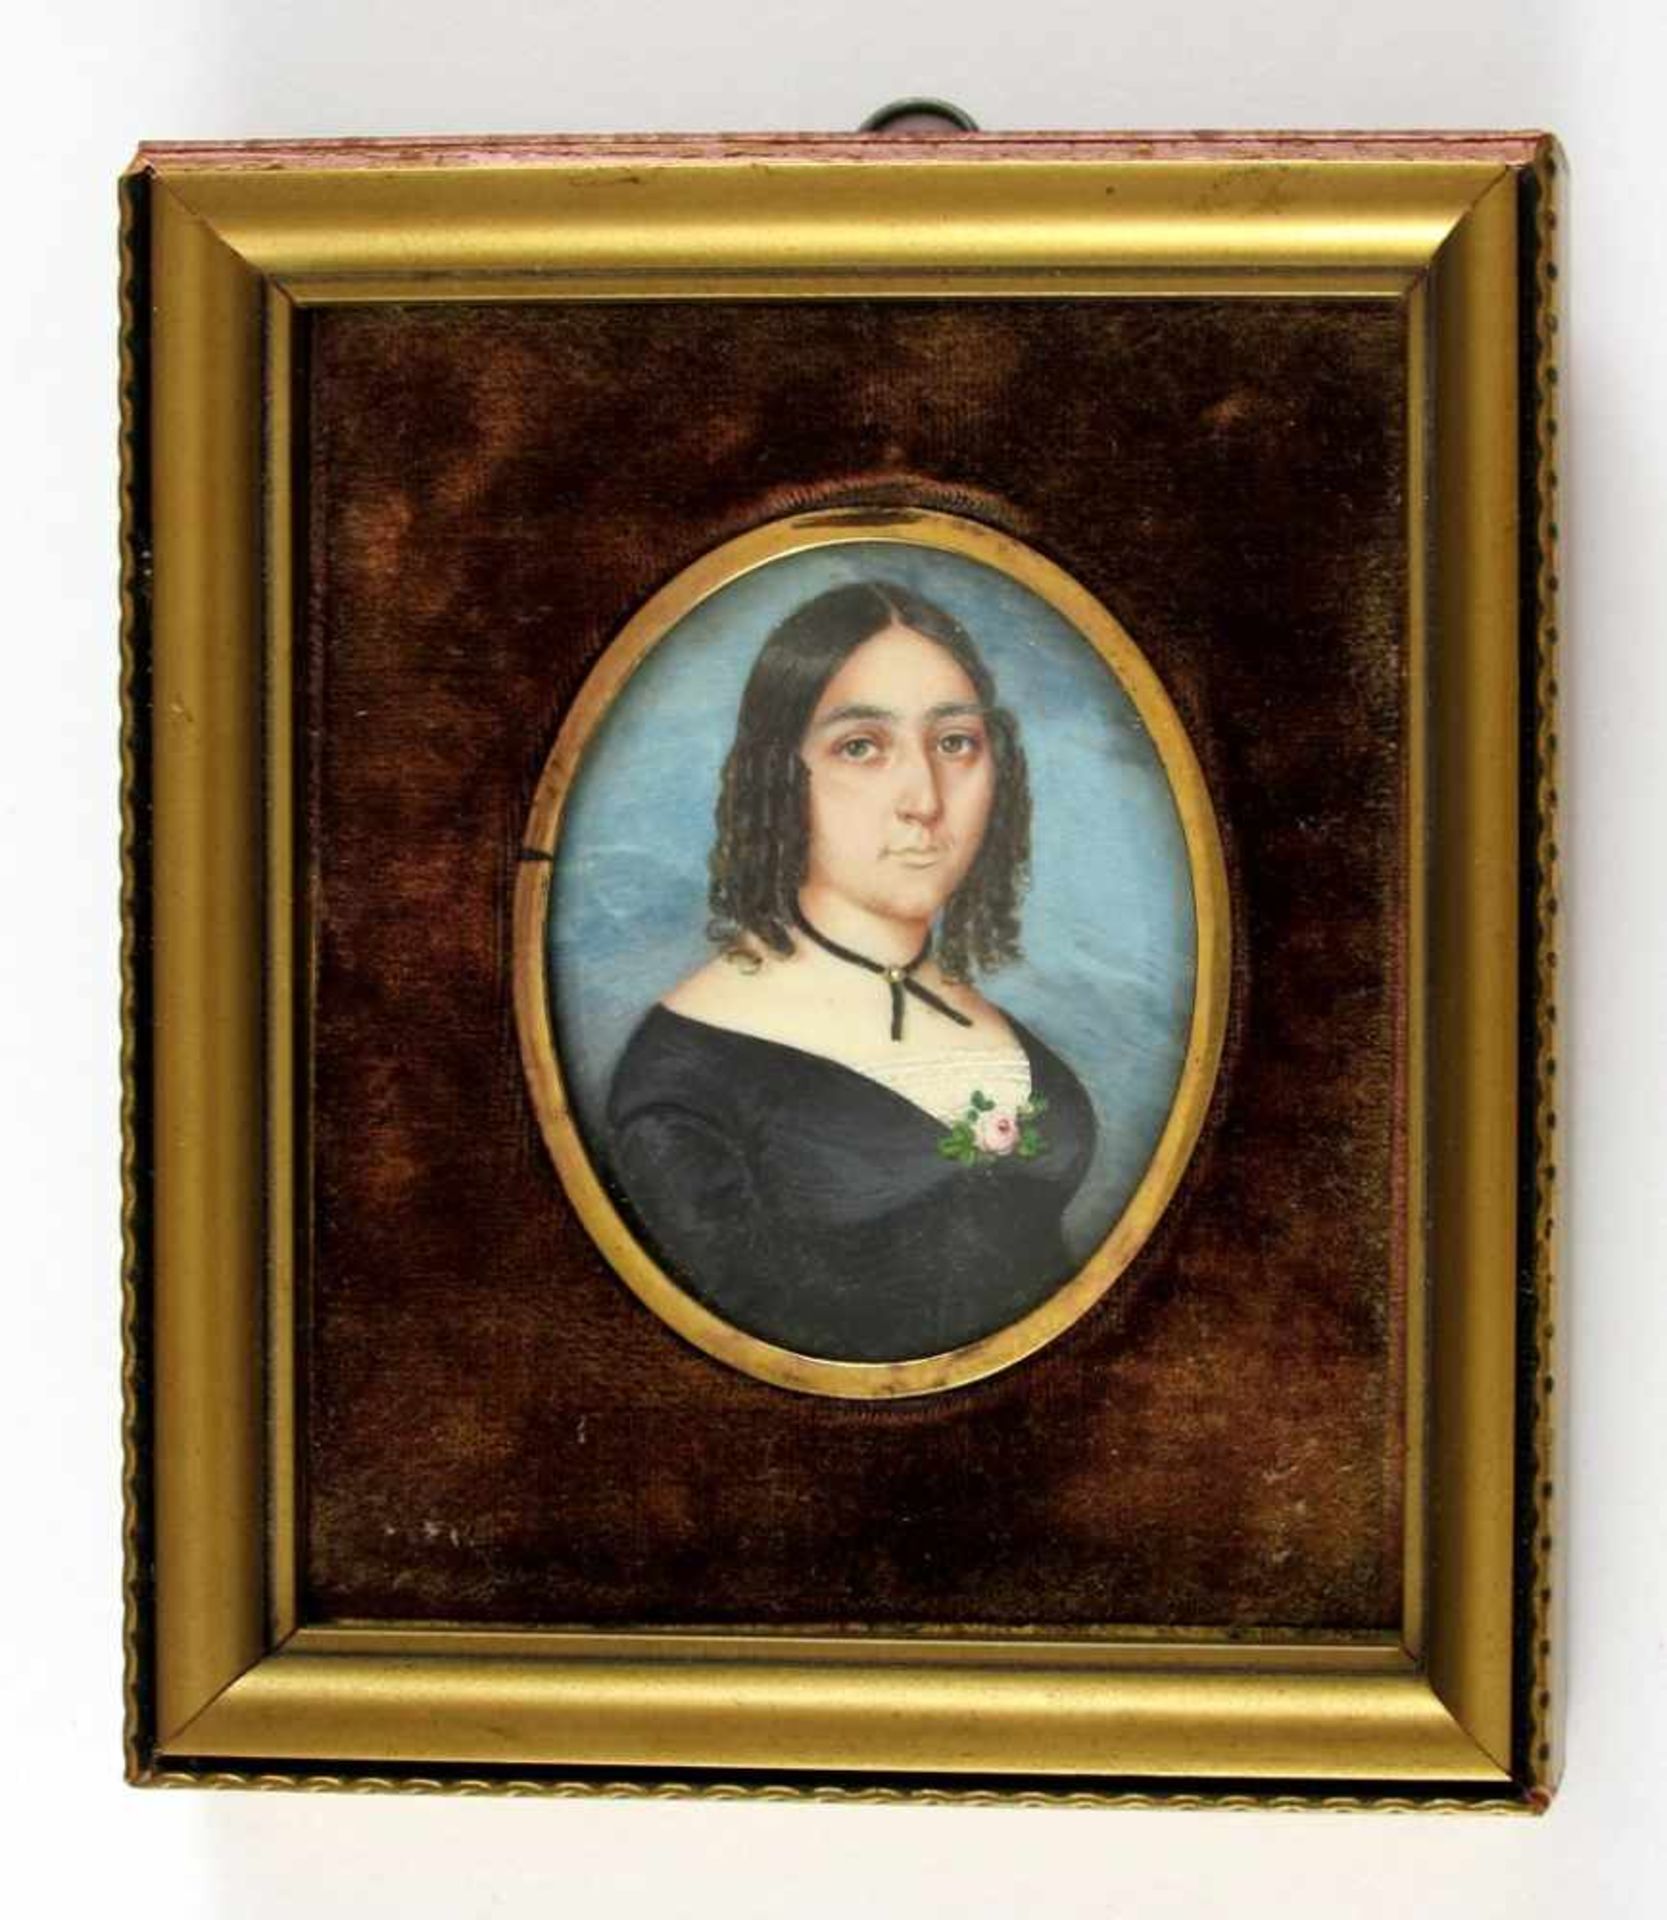 Damenportrait mit Stöpsellocken. Auf Elfenbein. 19. Jh. Oval, 6 x 4,8 cm. R